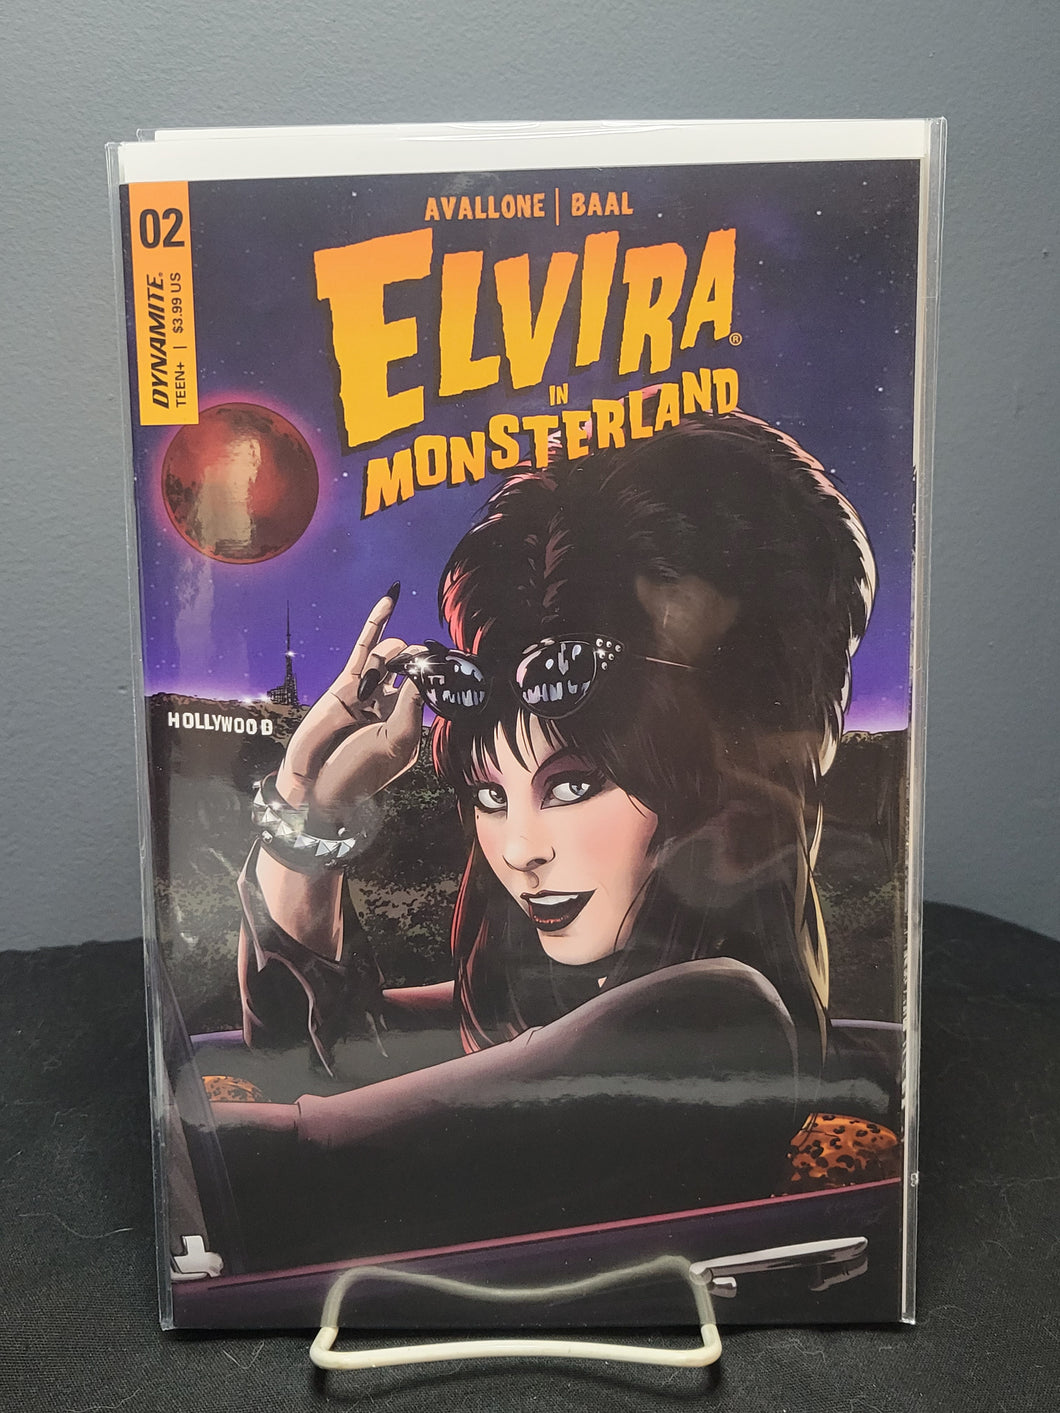 Elvira In Monsterland #2 Variant